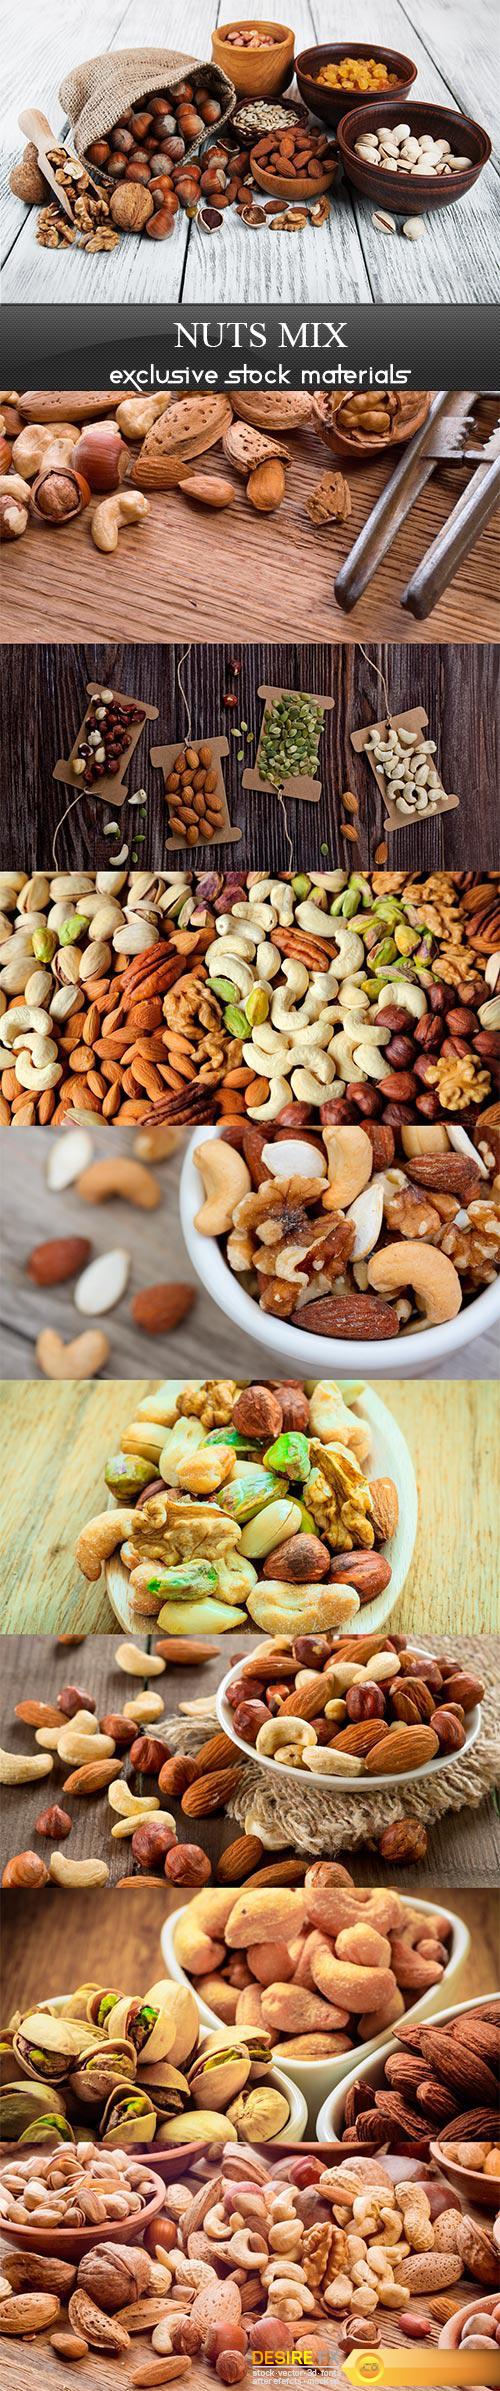 Nuts mix- 9UHQ JPEG